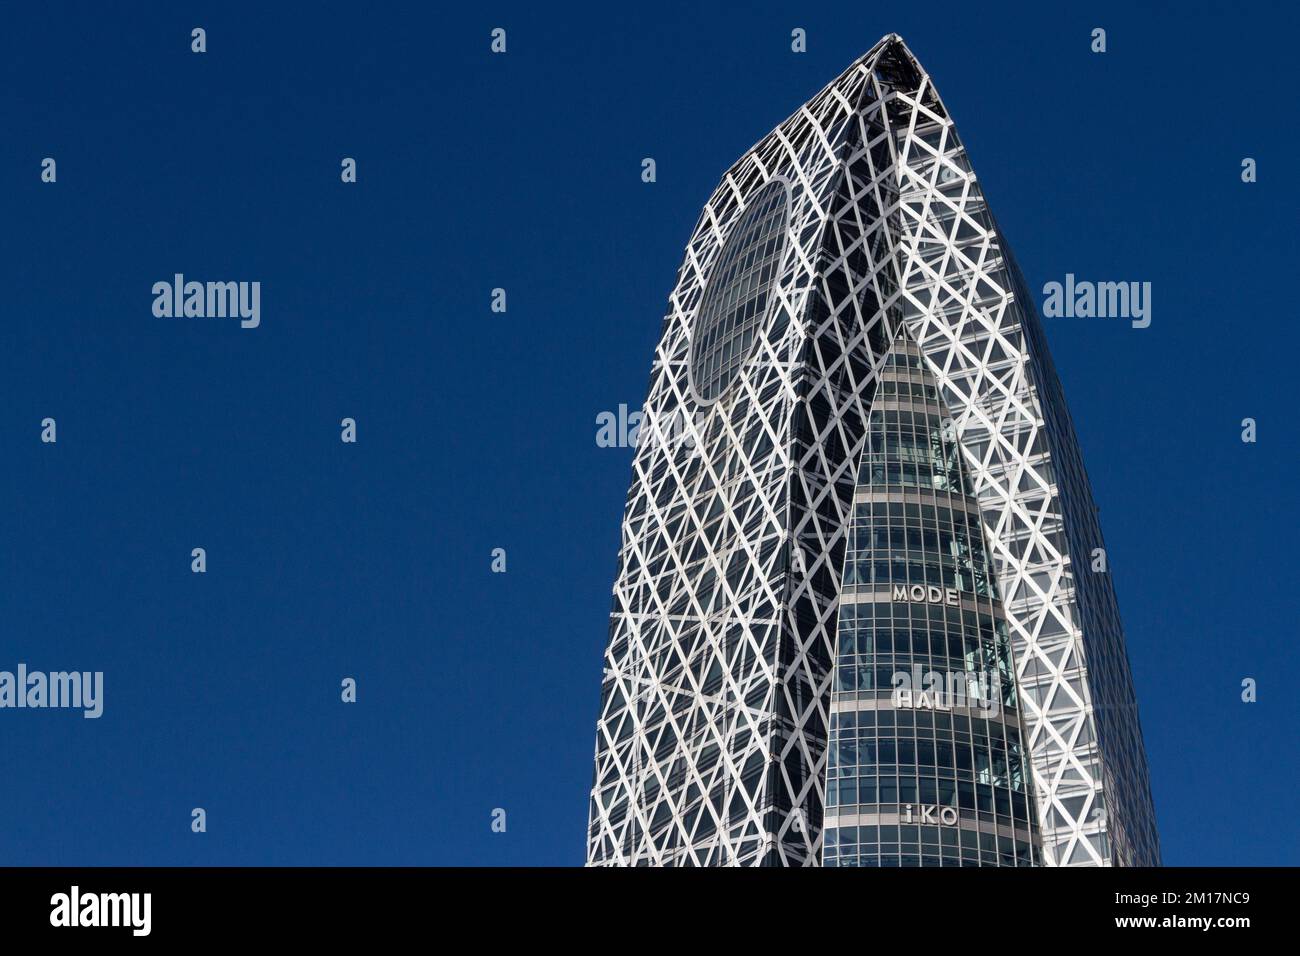 Der unverwechselbare Mode Gakuen Cocoon Tower in Shinjuku, Tokio, Japan. Stockfoto